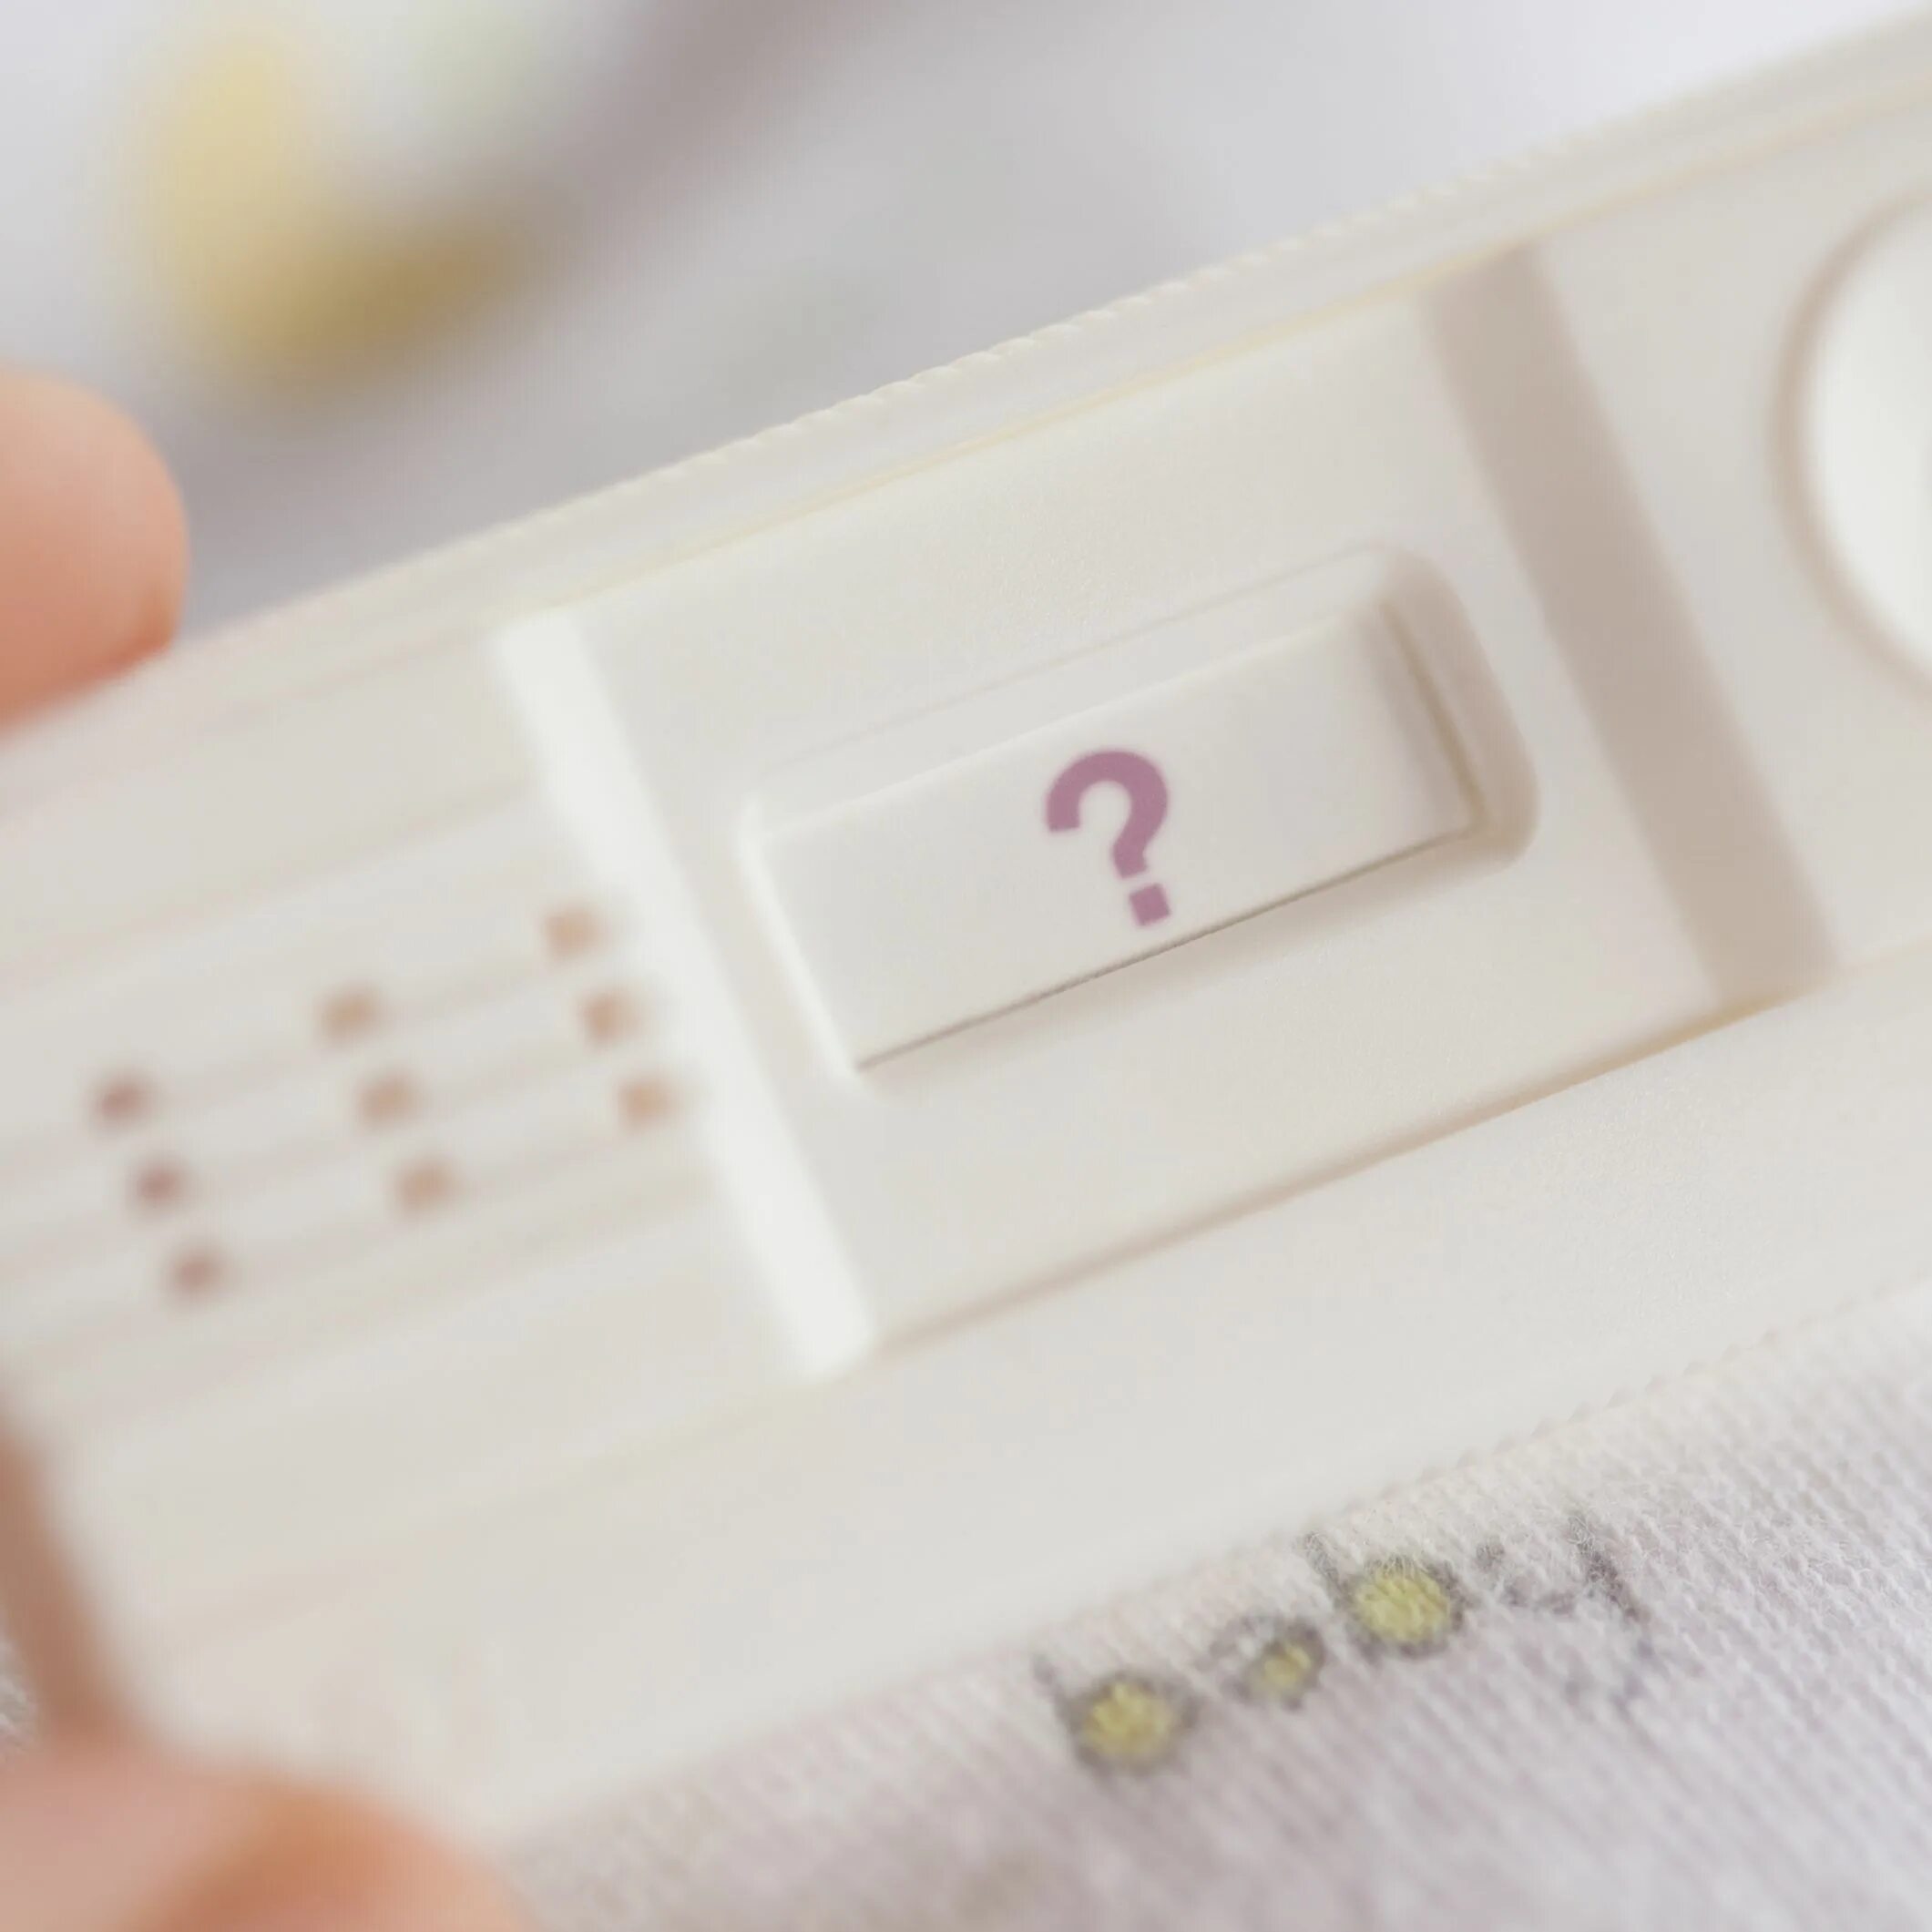 Задержка месячных 13 дней причины. Беременность отрицательном тесте. Тест на беременность со знаком вопроса. Задержка месячных на фоне стресса сколько может длиться. Месячные 2 дня вместо 5